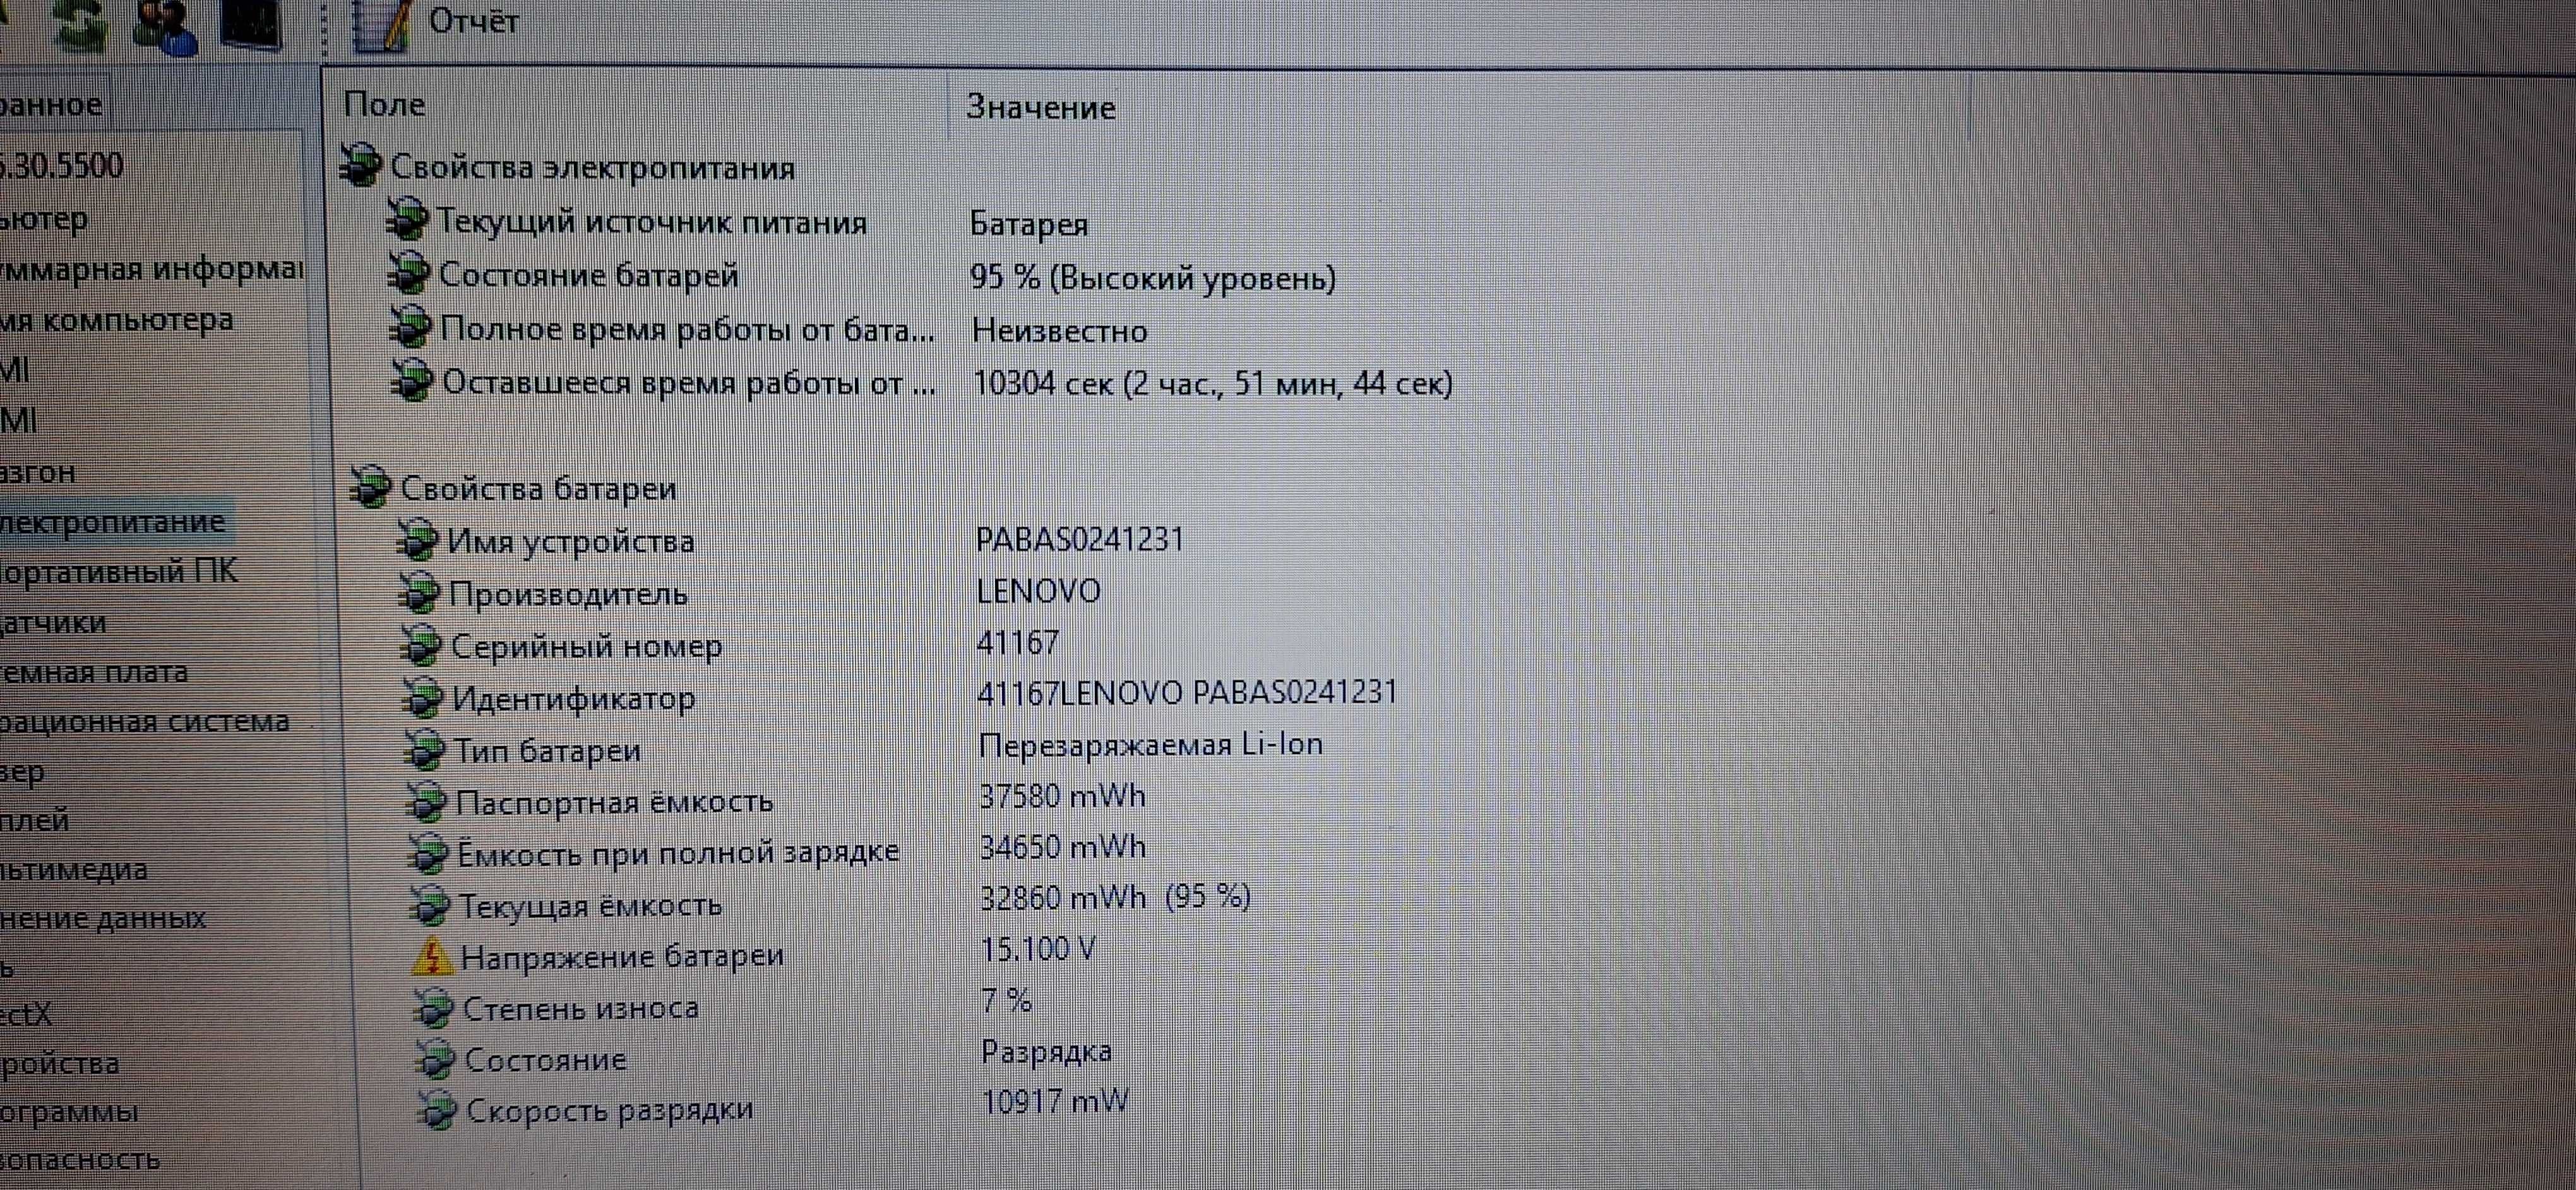 Ноутбук Lenovo G70/ 17.3" / AMD A8-4 ядра /8 GB DDR3/ 128 GB SSD